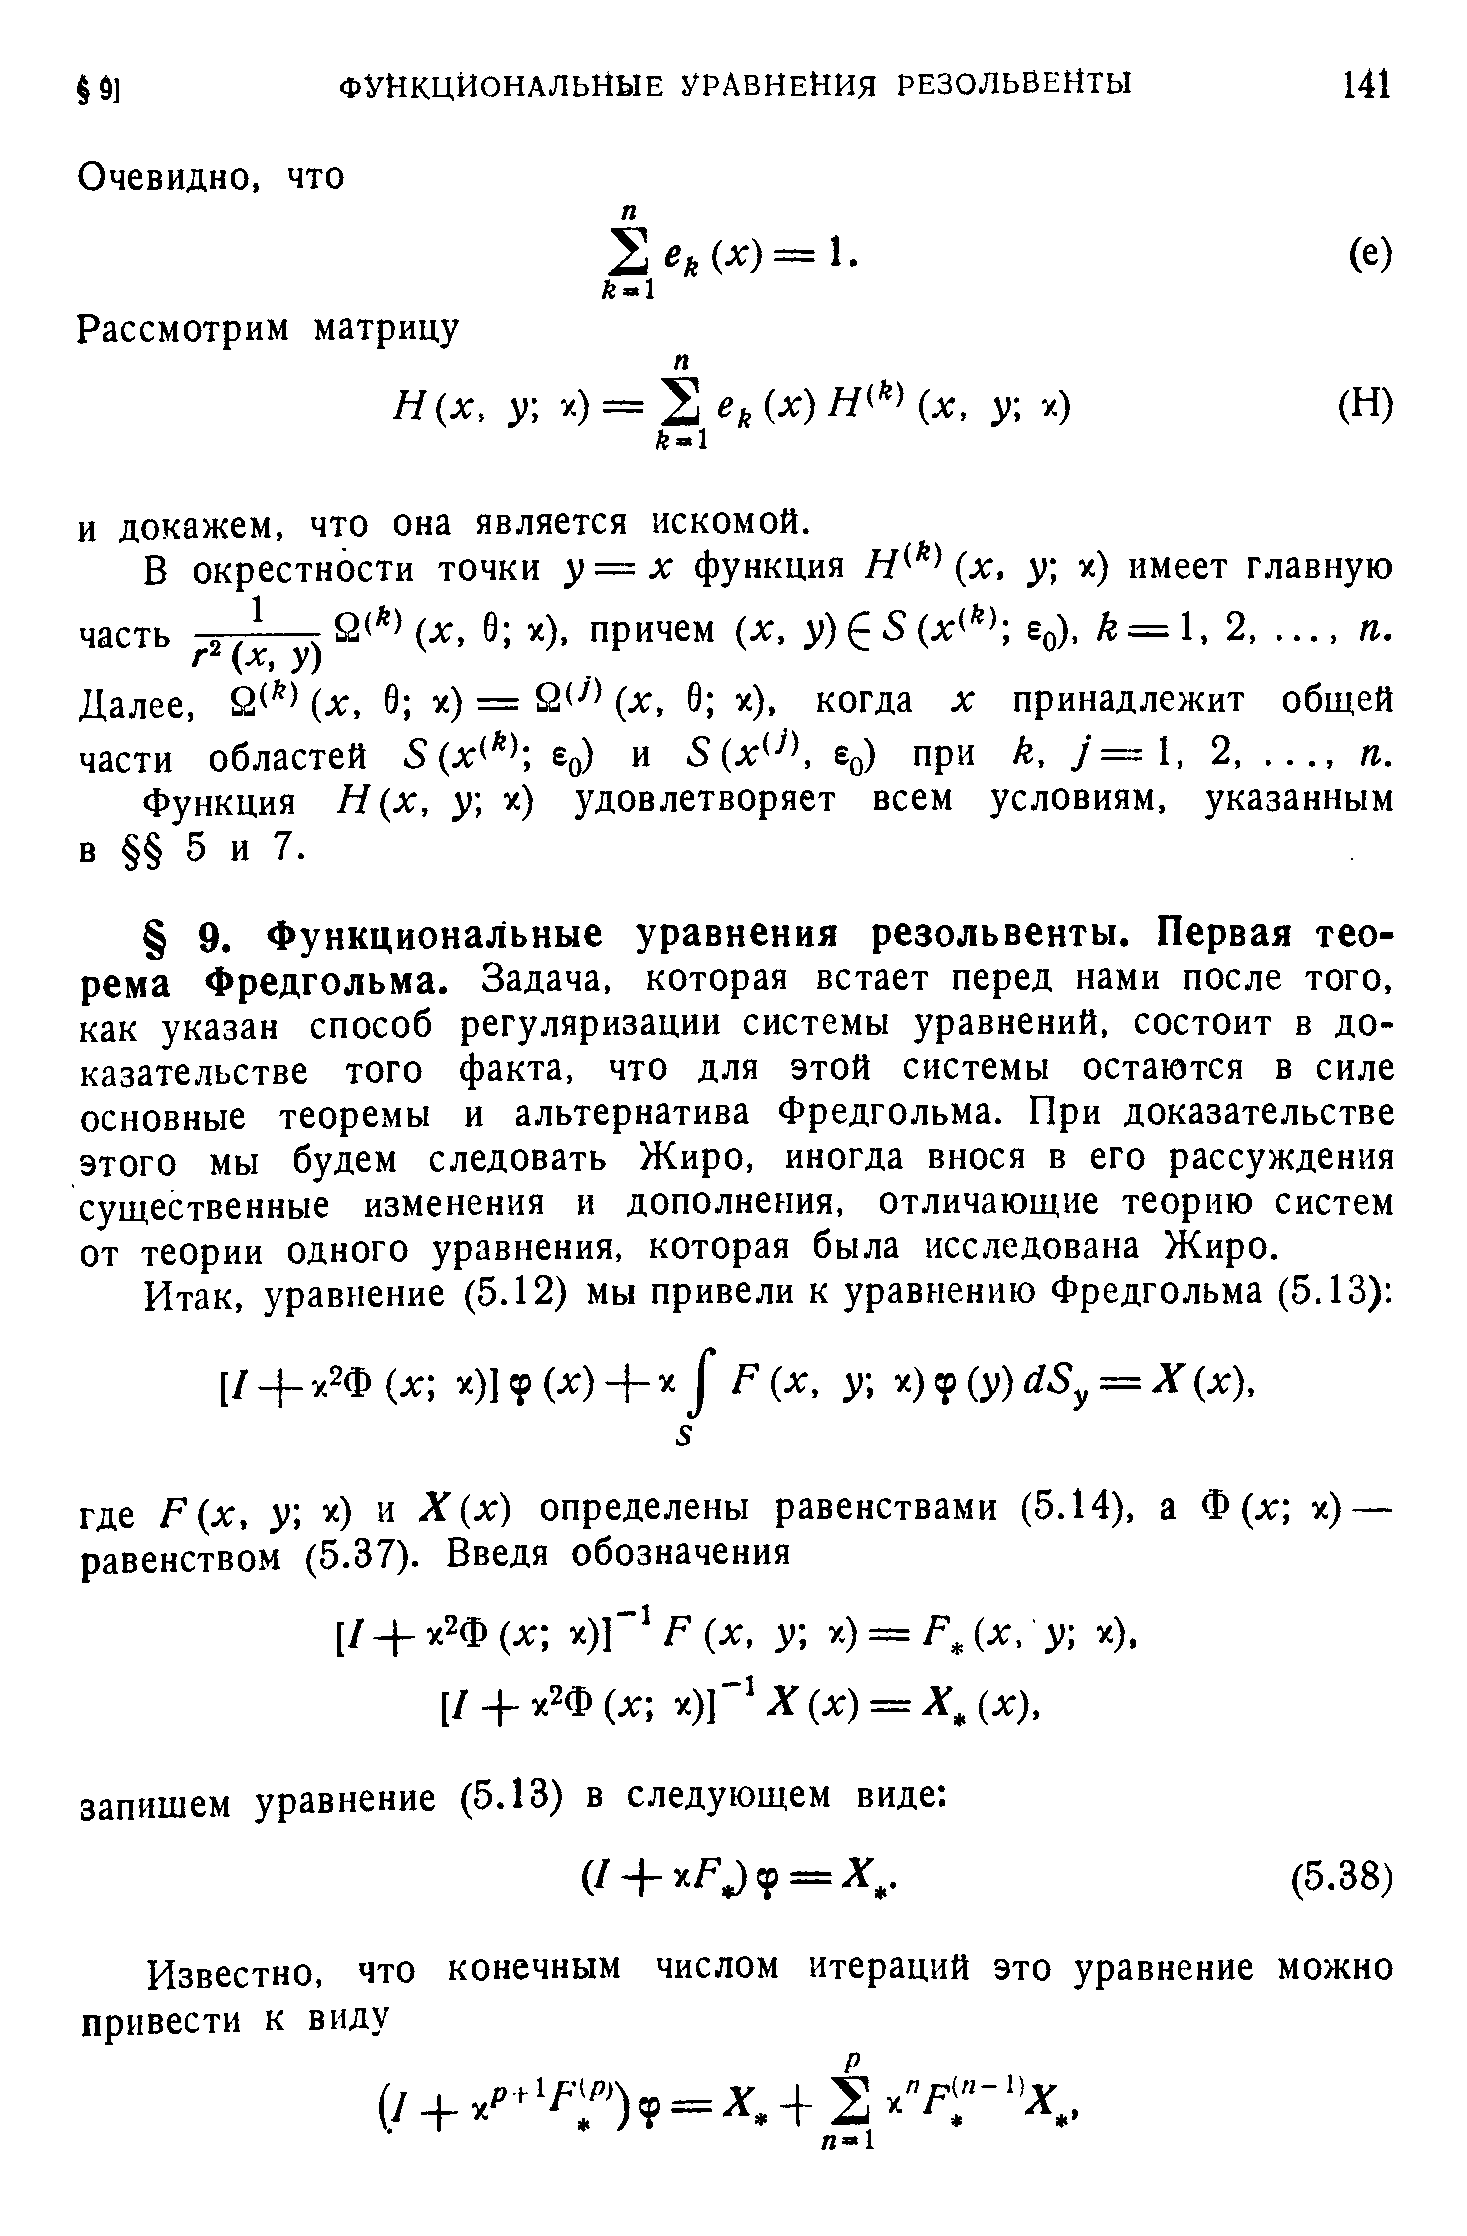 Функция Я(х, у х) удовлетворяет всем условиям, указанным в 5 и 7.
